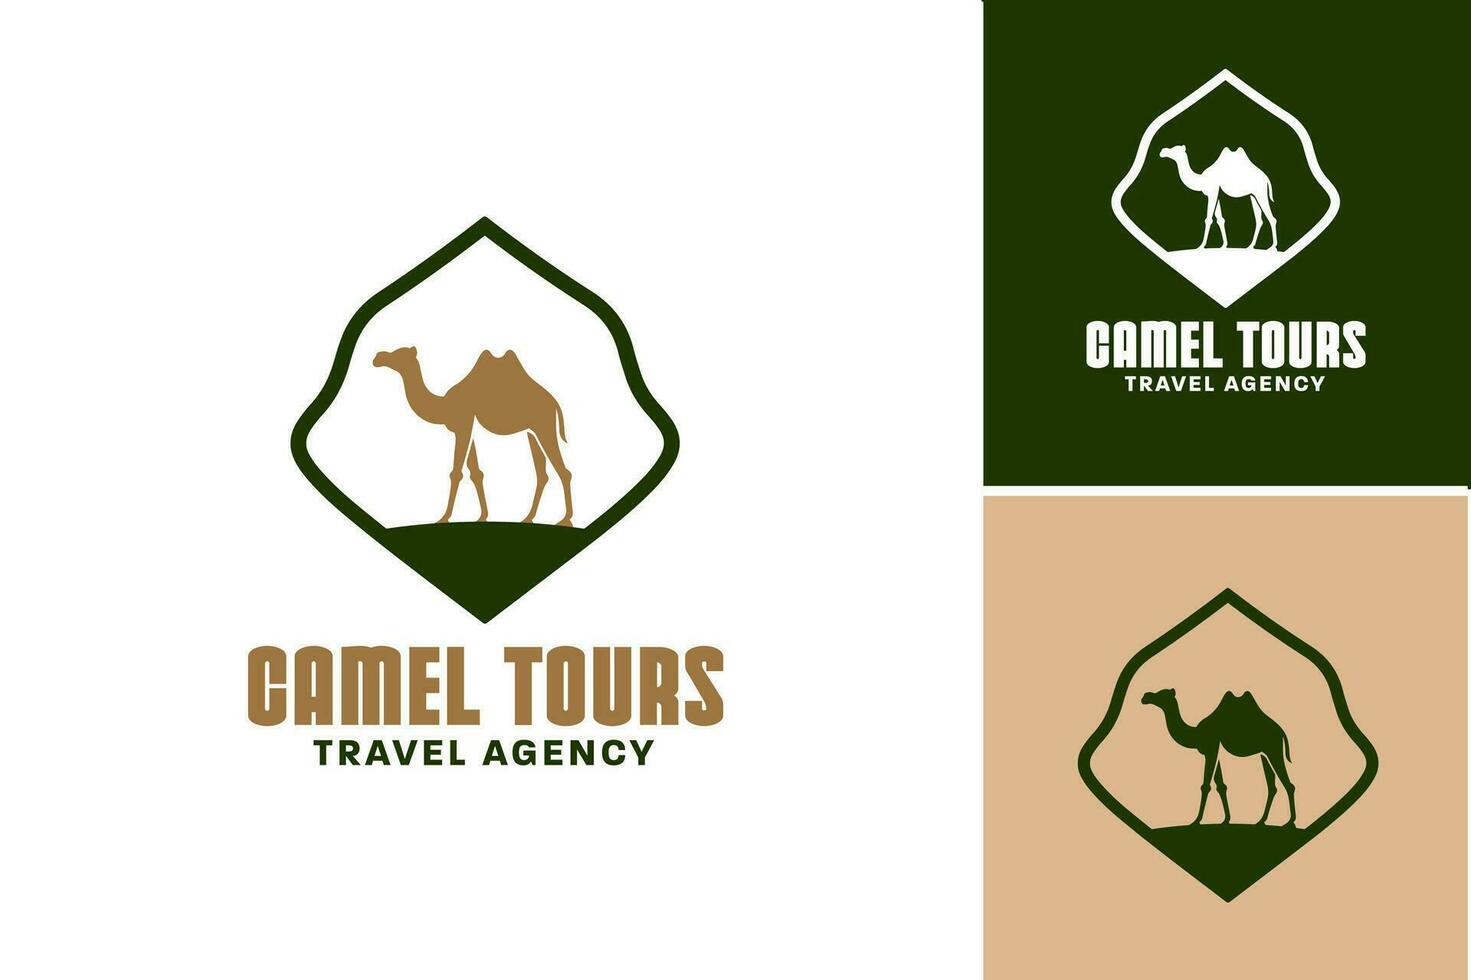 kamel turer logotyp design är en gripande och lockande design tillgång den där är perfekt för företag eller organisationer erbjudande kamel turer som del av deras tjänster. vektor